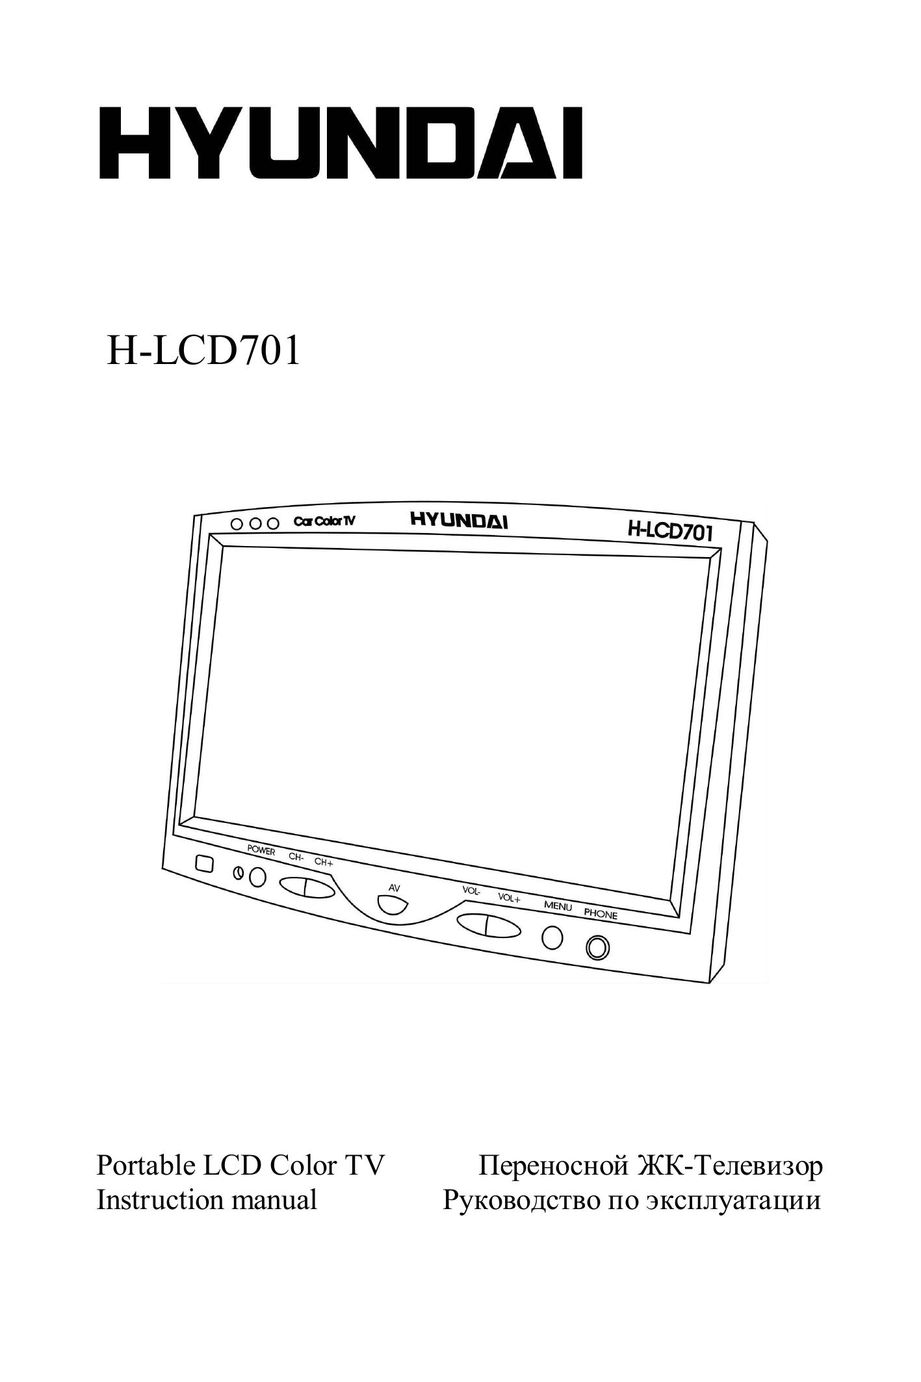 Hyundai H-LCD701 Flat Panel Television User Manual